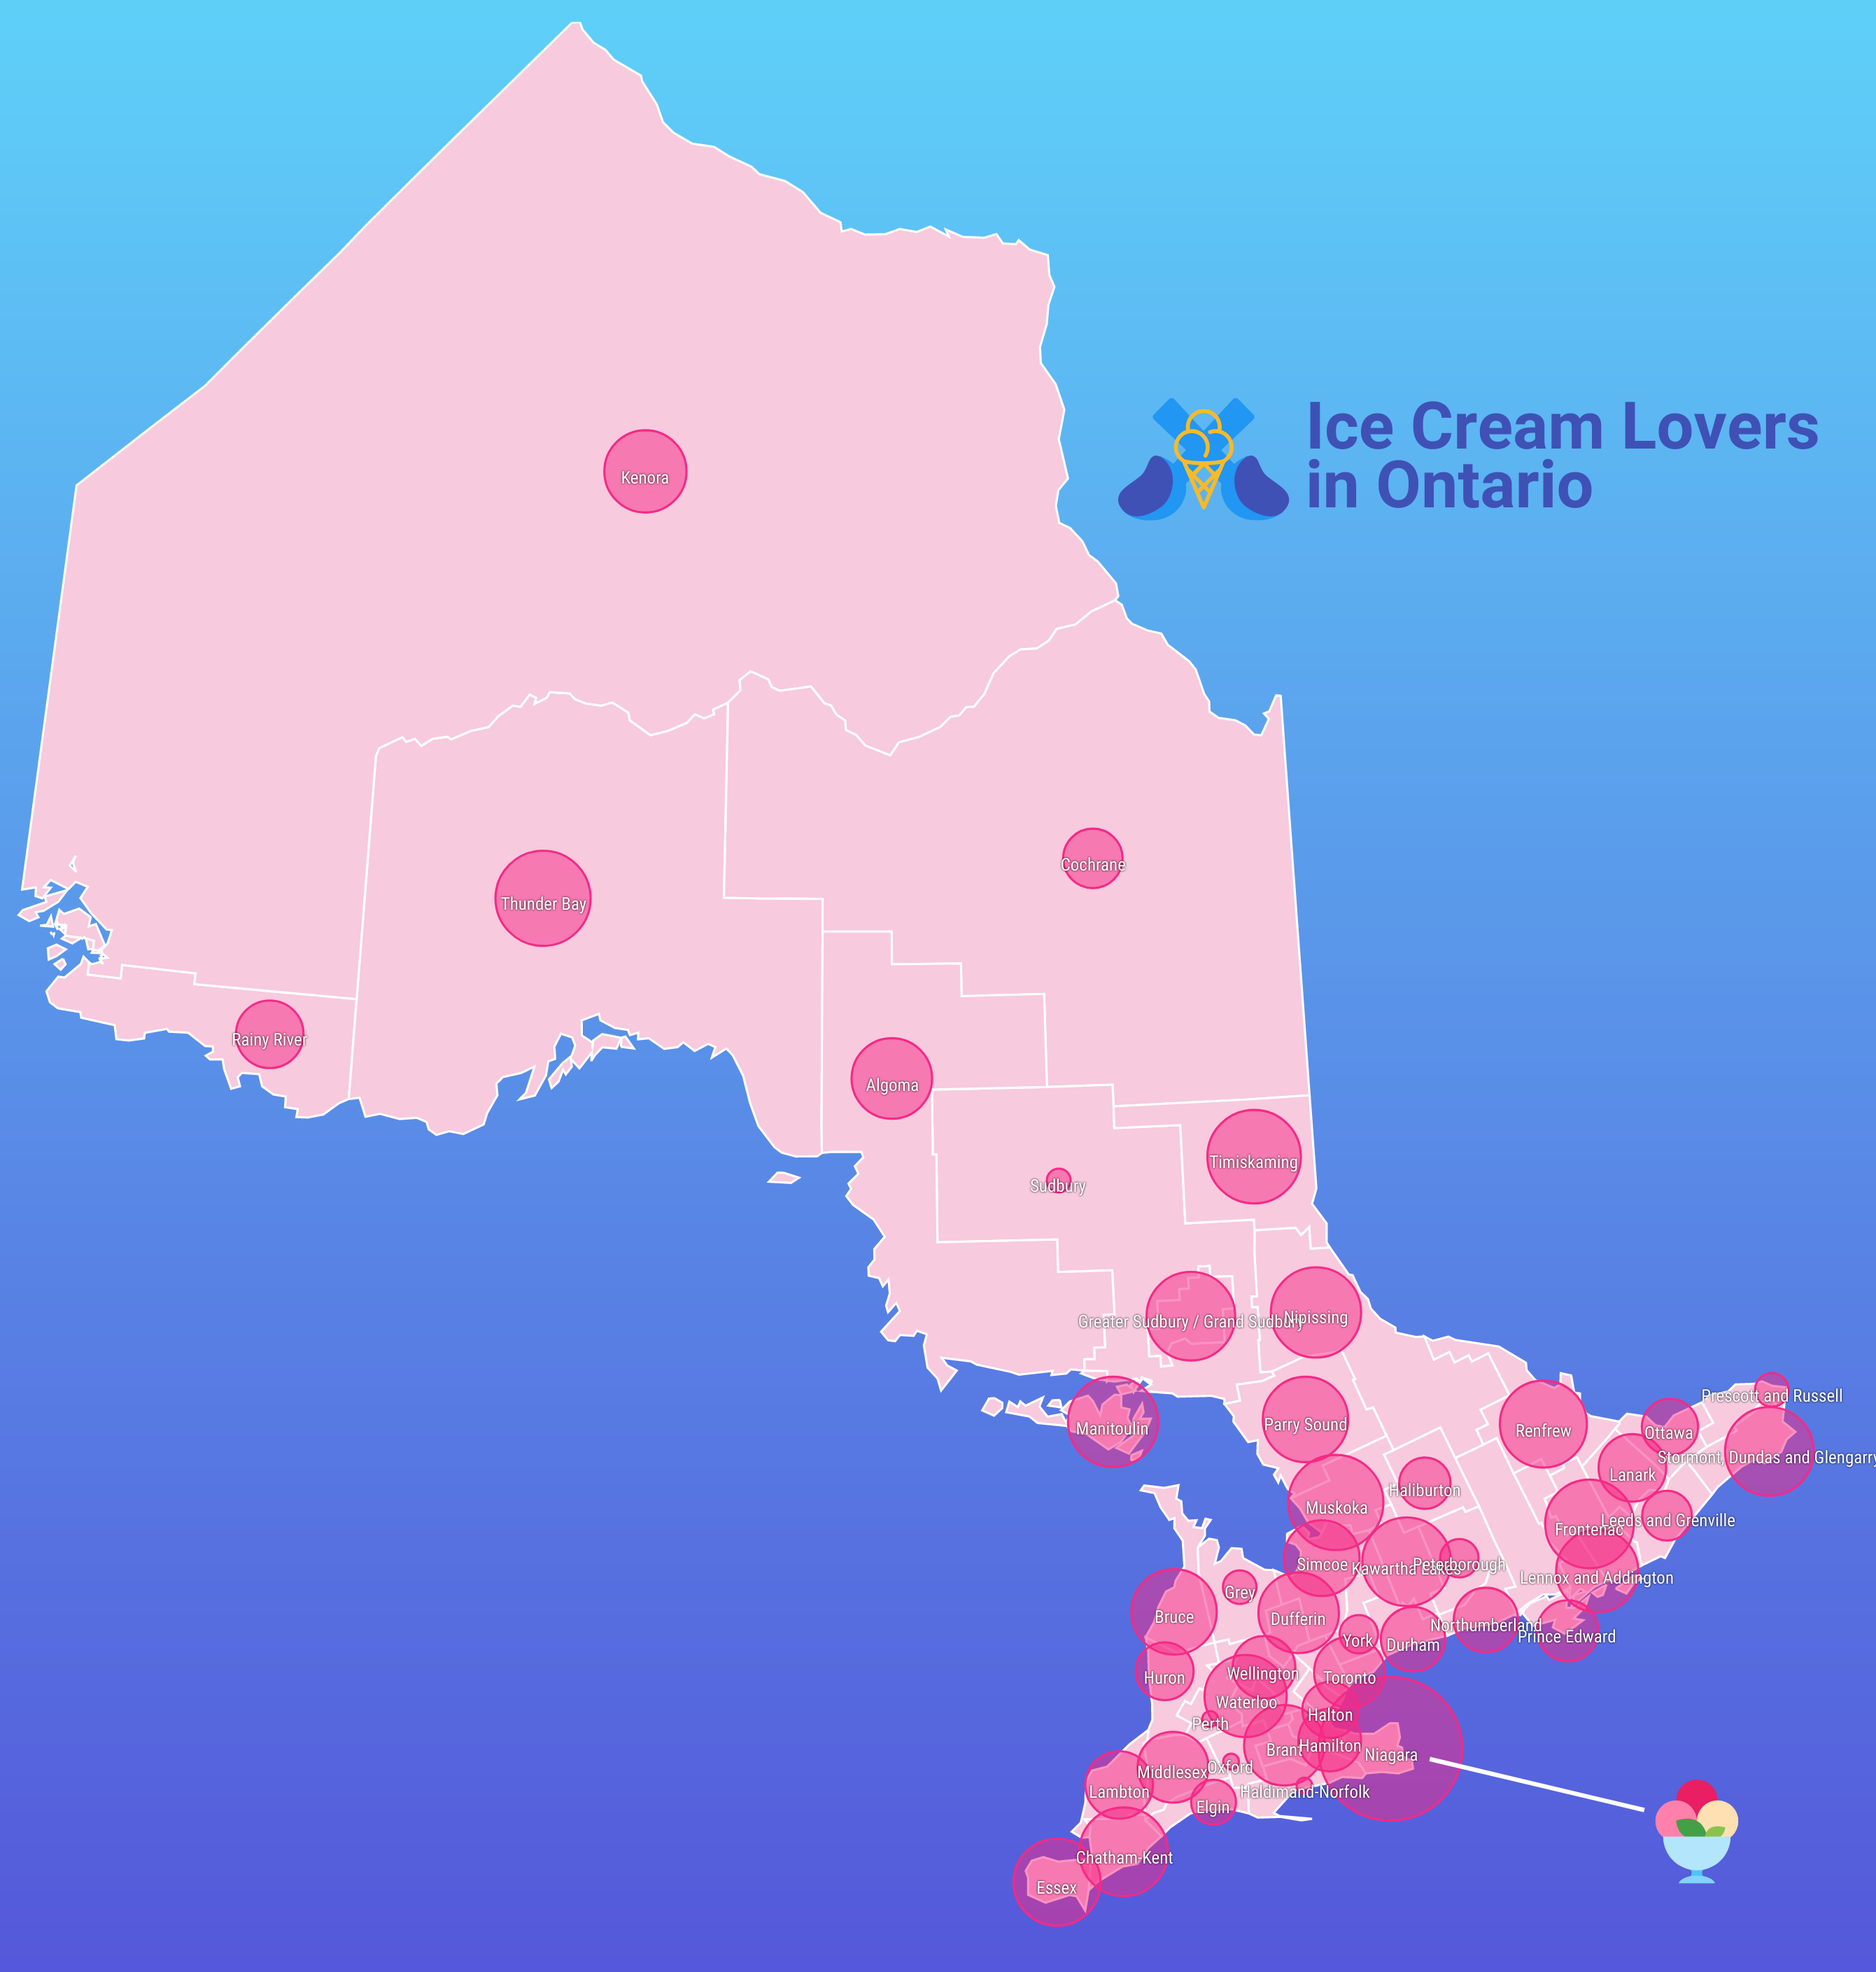 Un mapa de burbujas de Ontario titulado "Amantes del helado en Ontario".  Los nombres de las regiones aparecen sobre cada una en texto blanco delineado en negro.  Hay una línea blanca que indica la región cubierta por la burbuja más grande (Niagara), con un icono de helado al lado.  La provincia es de color rosa claro y las regiones están superpuestas con burbujas de color rosa oscuro de diferentes tamaños.  El fondo es un degradado de azul claro a azul oscuro.